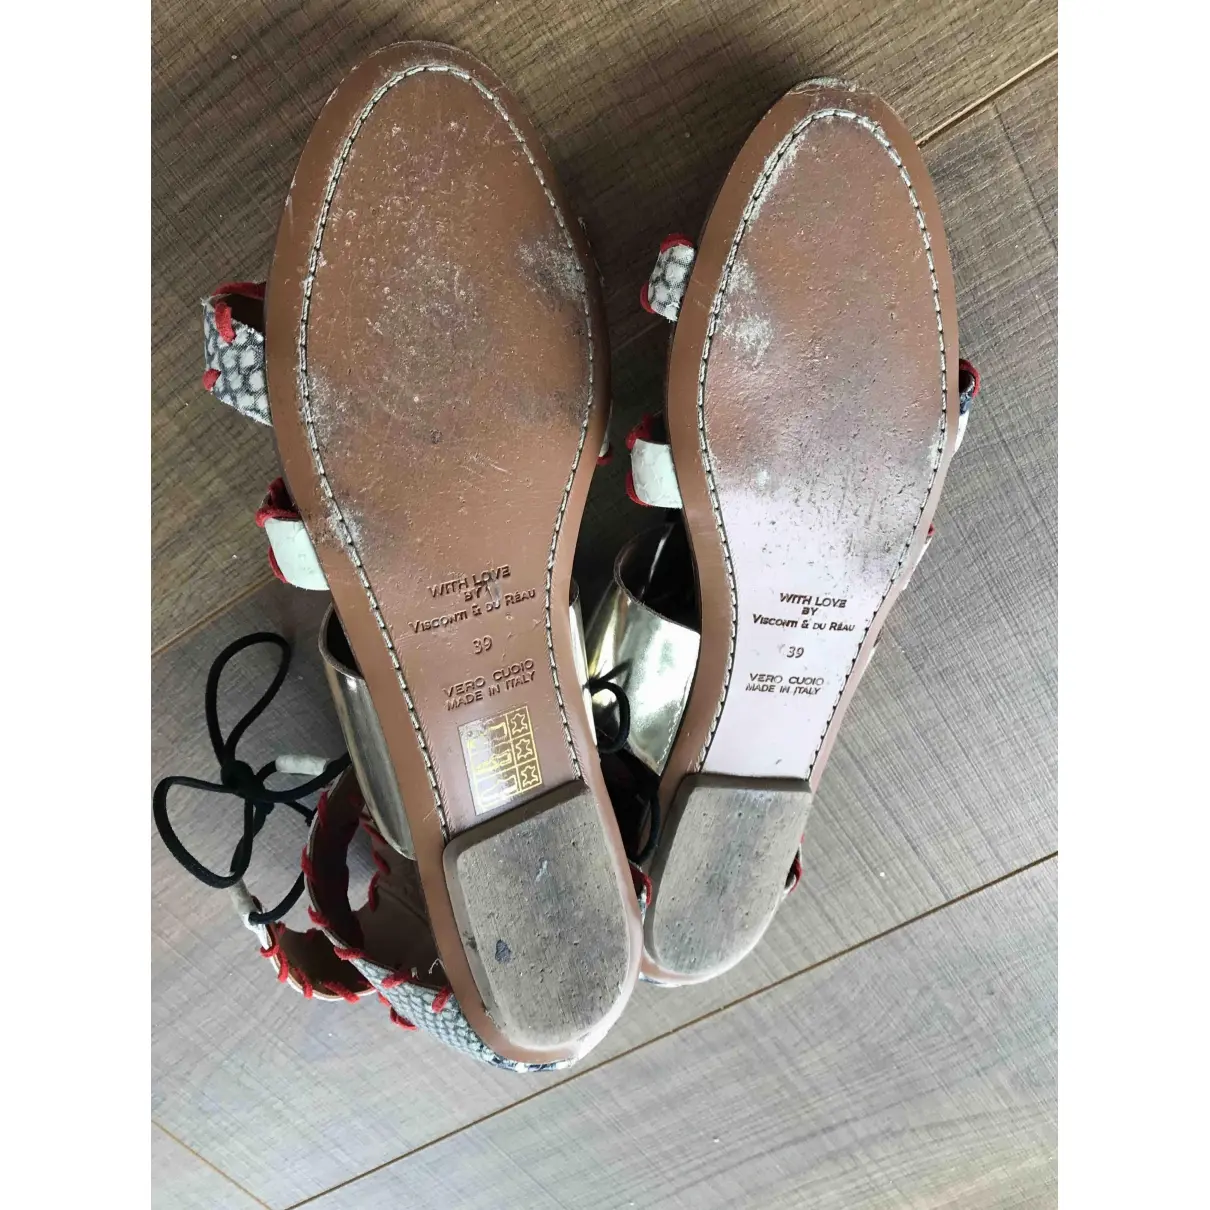 Leather sandals Visconti & Du Reau